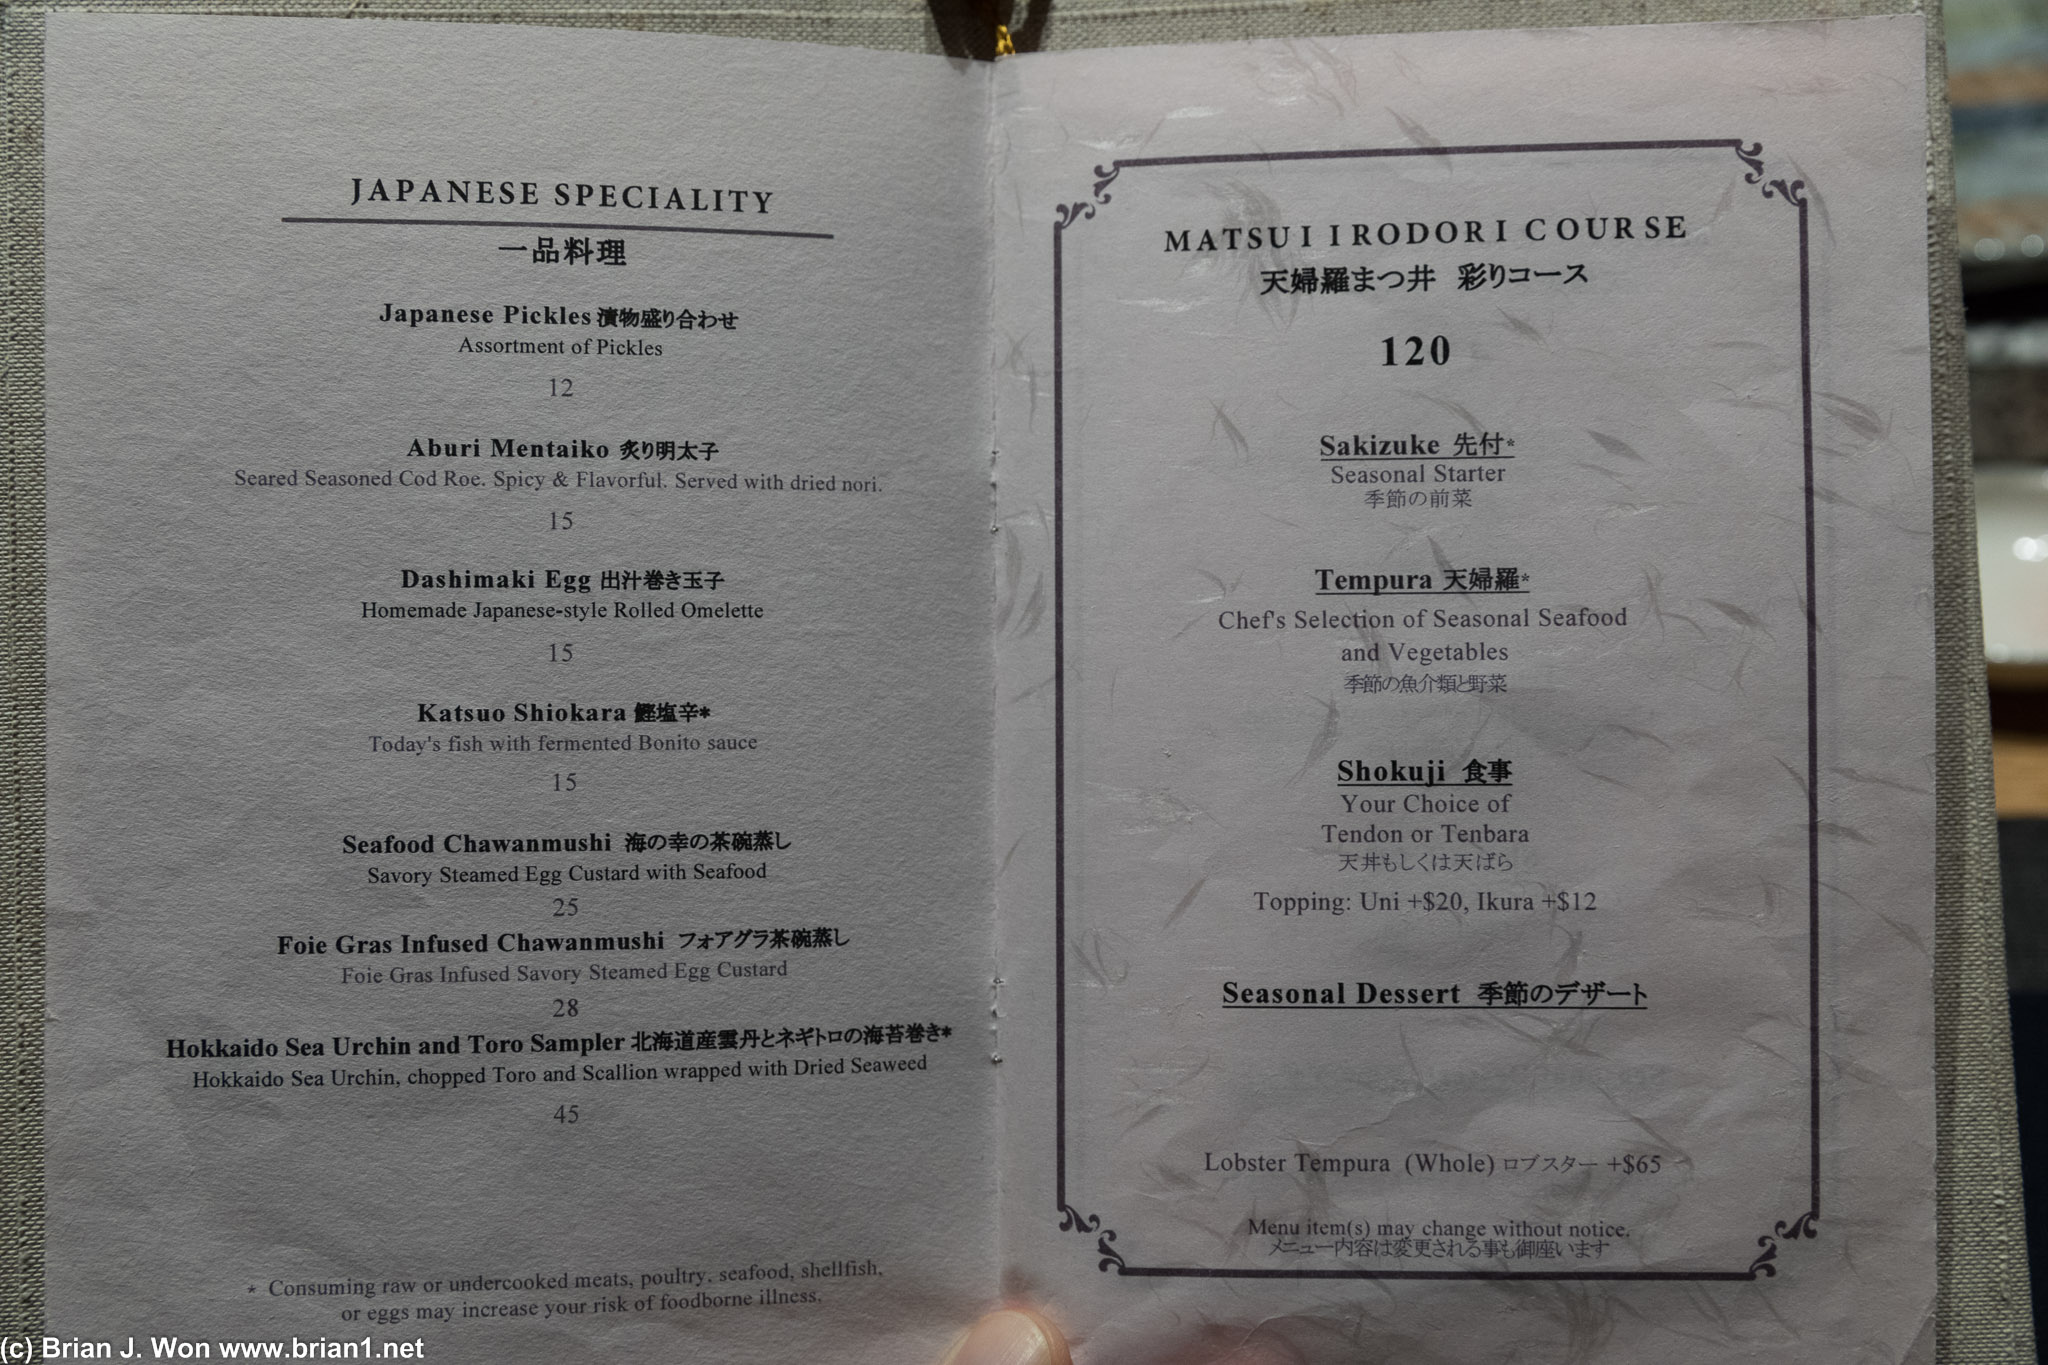 More of the menu.